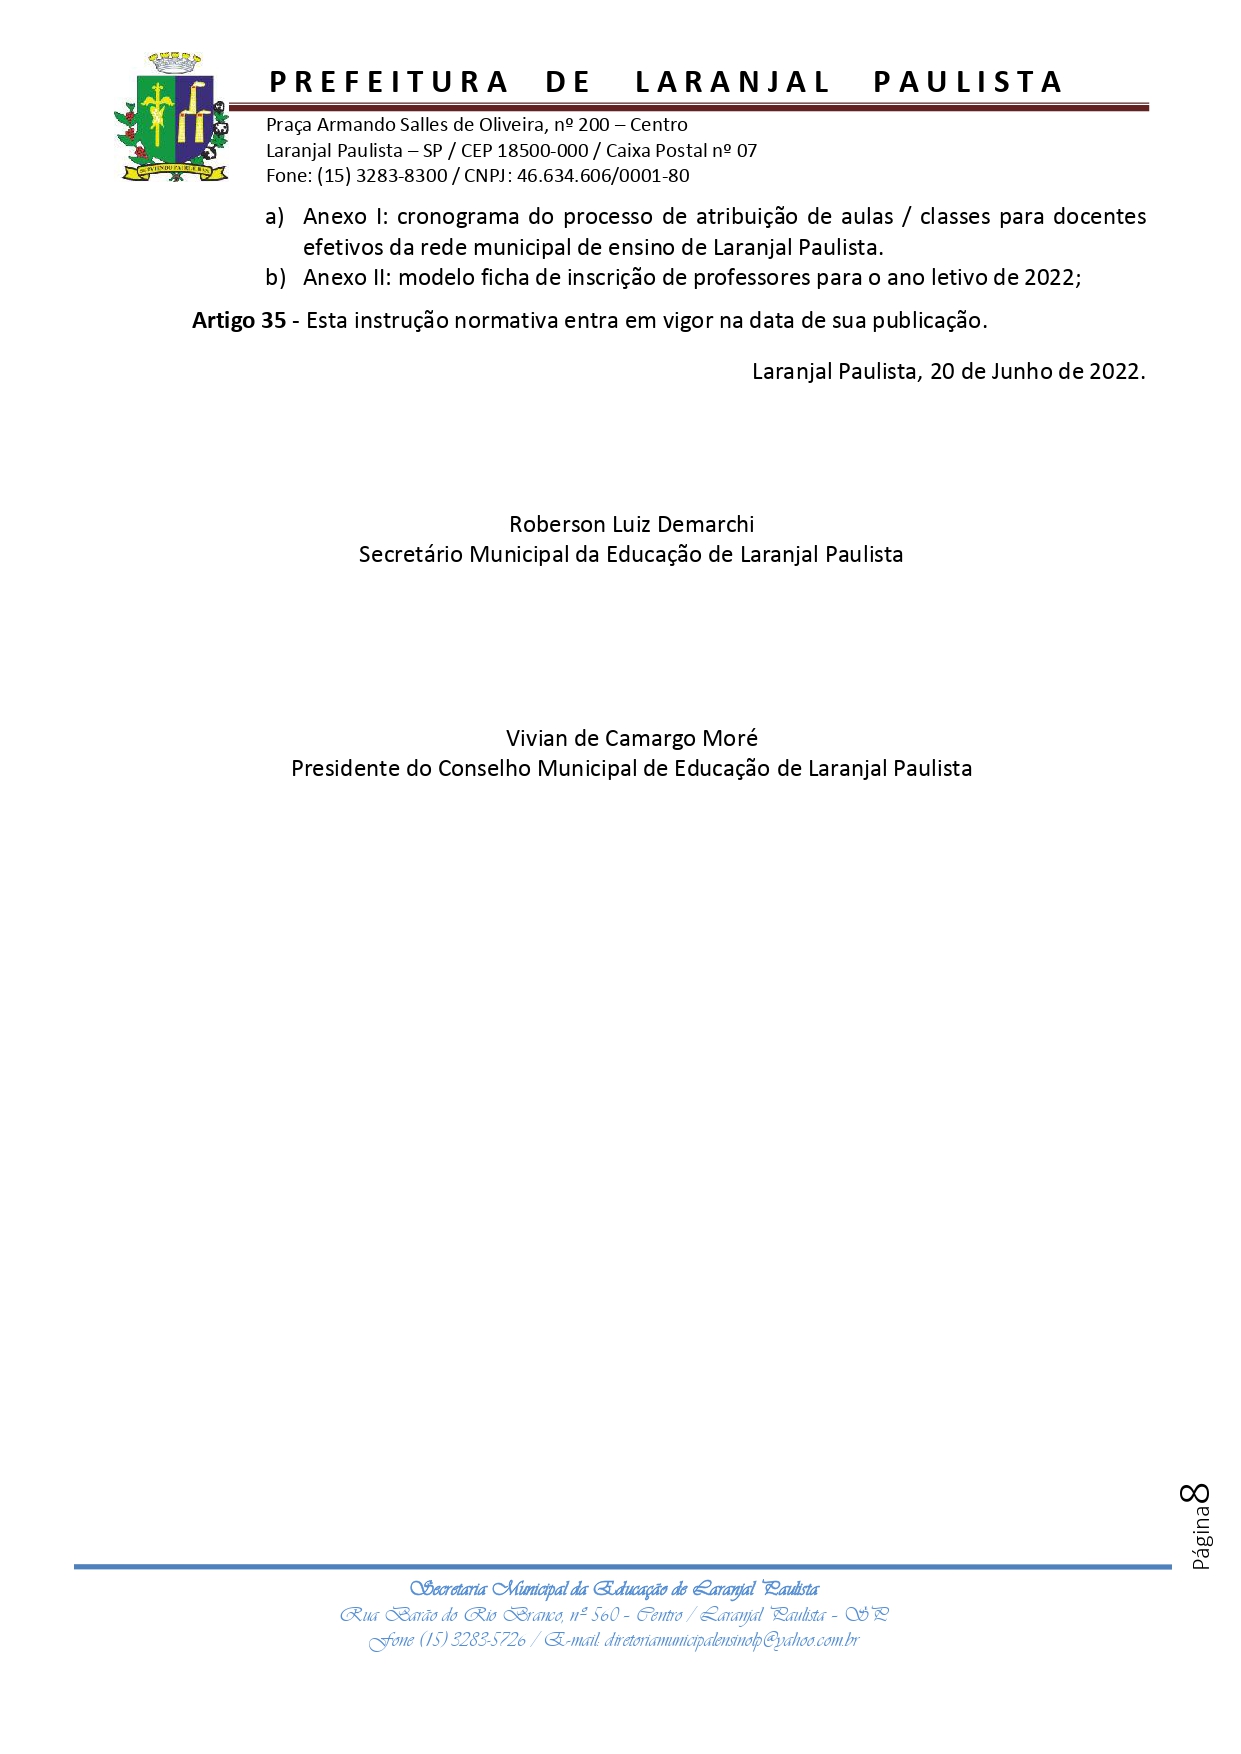 Instrução normativa SME nº 006/2022